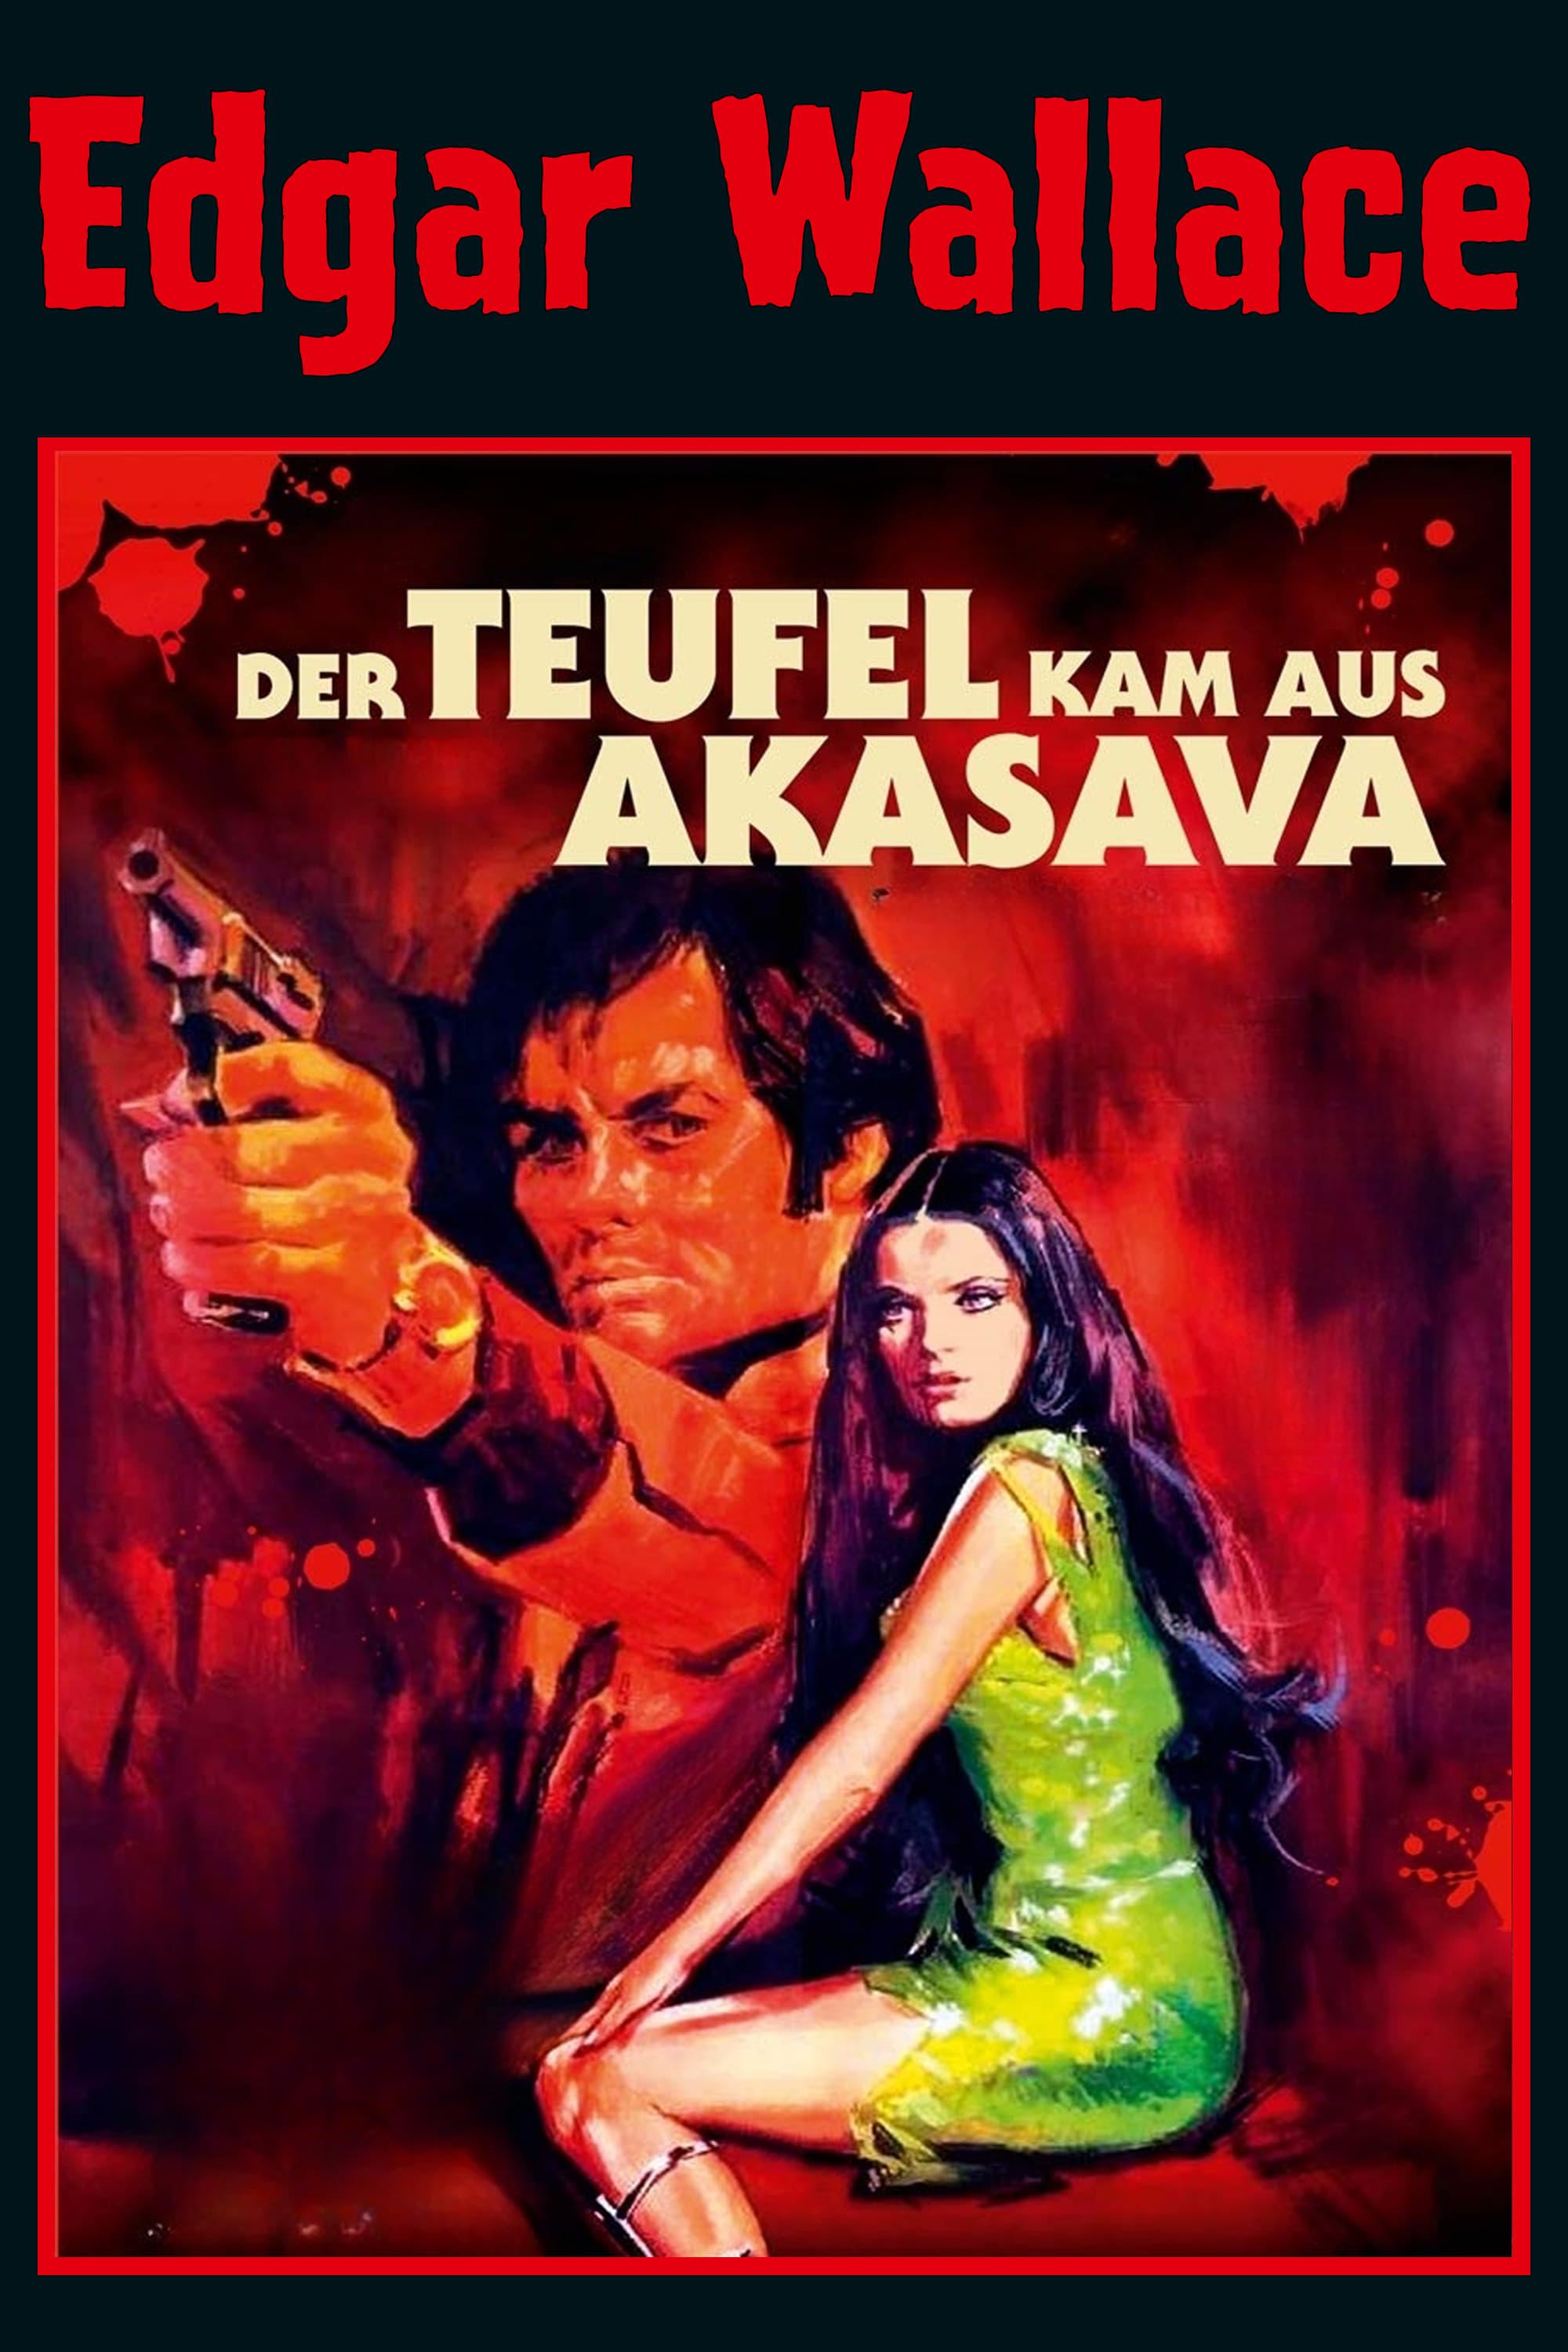 Edgar Wallace - Der Teufel kam aus Akasava poster